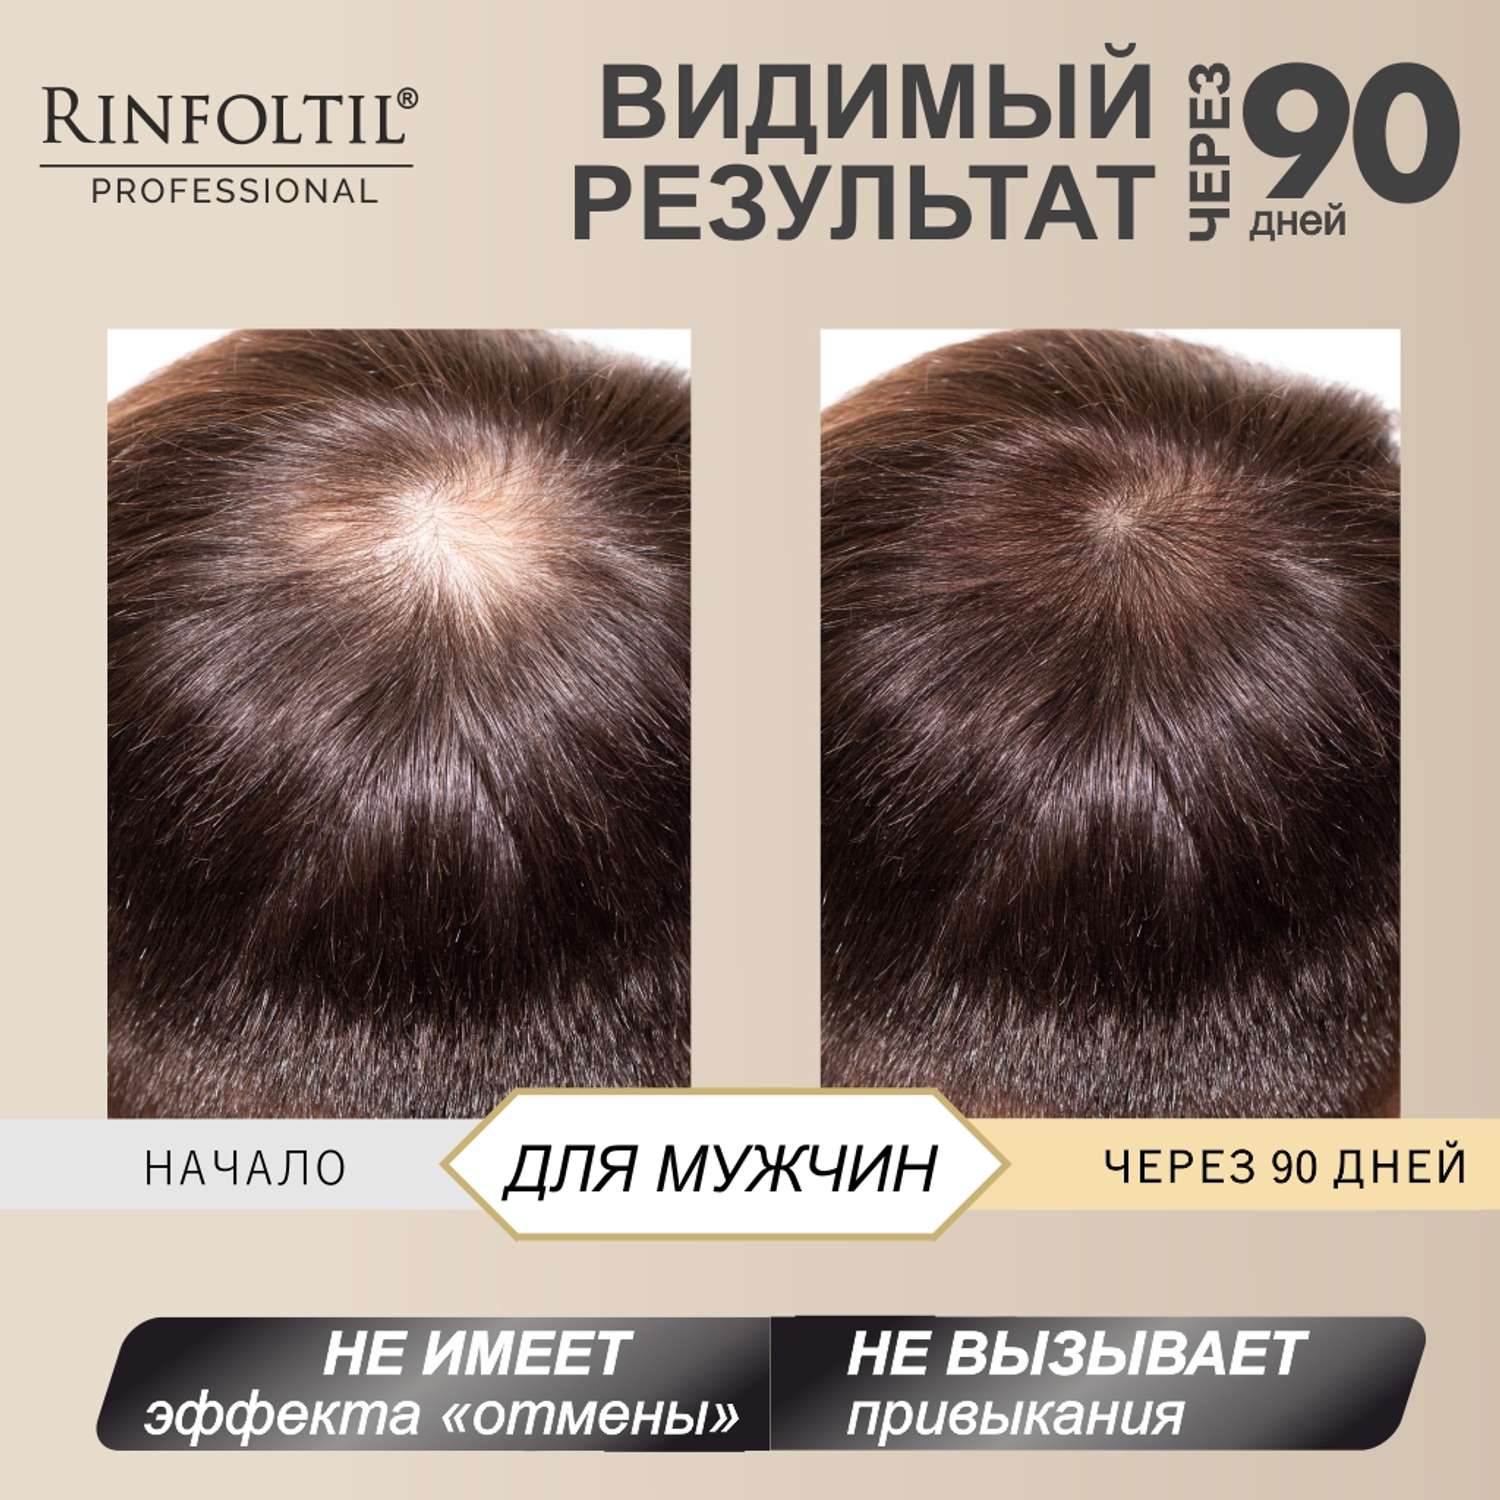 Лосьон Rinfoltil СЕРЕНОА лосьон для мужчин для улучшения качества волос и ухода за кожей головы - фото 7